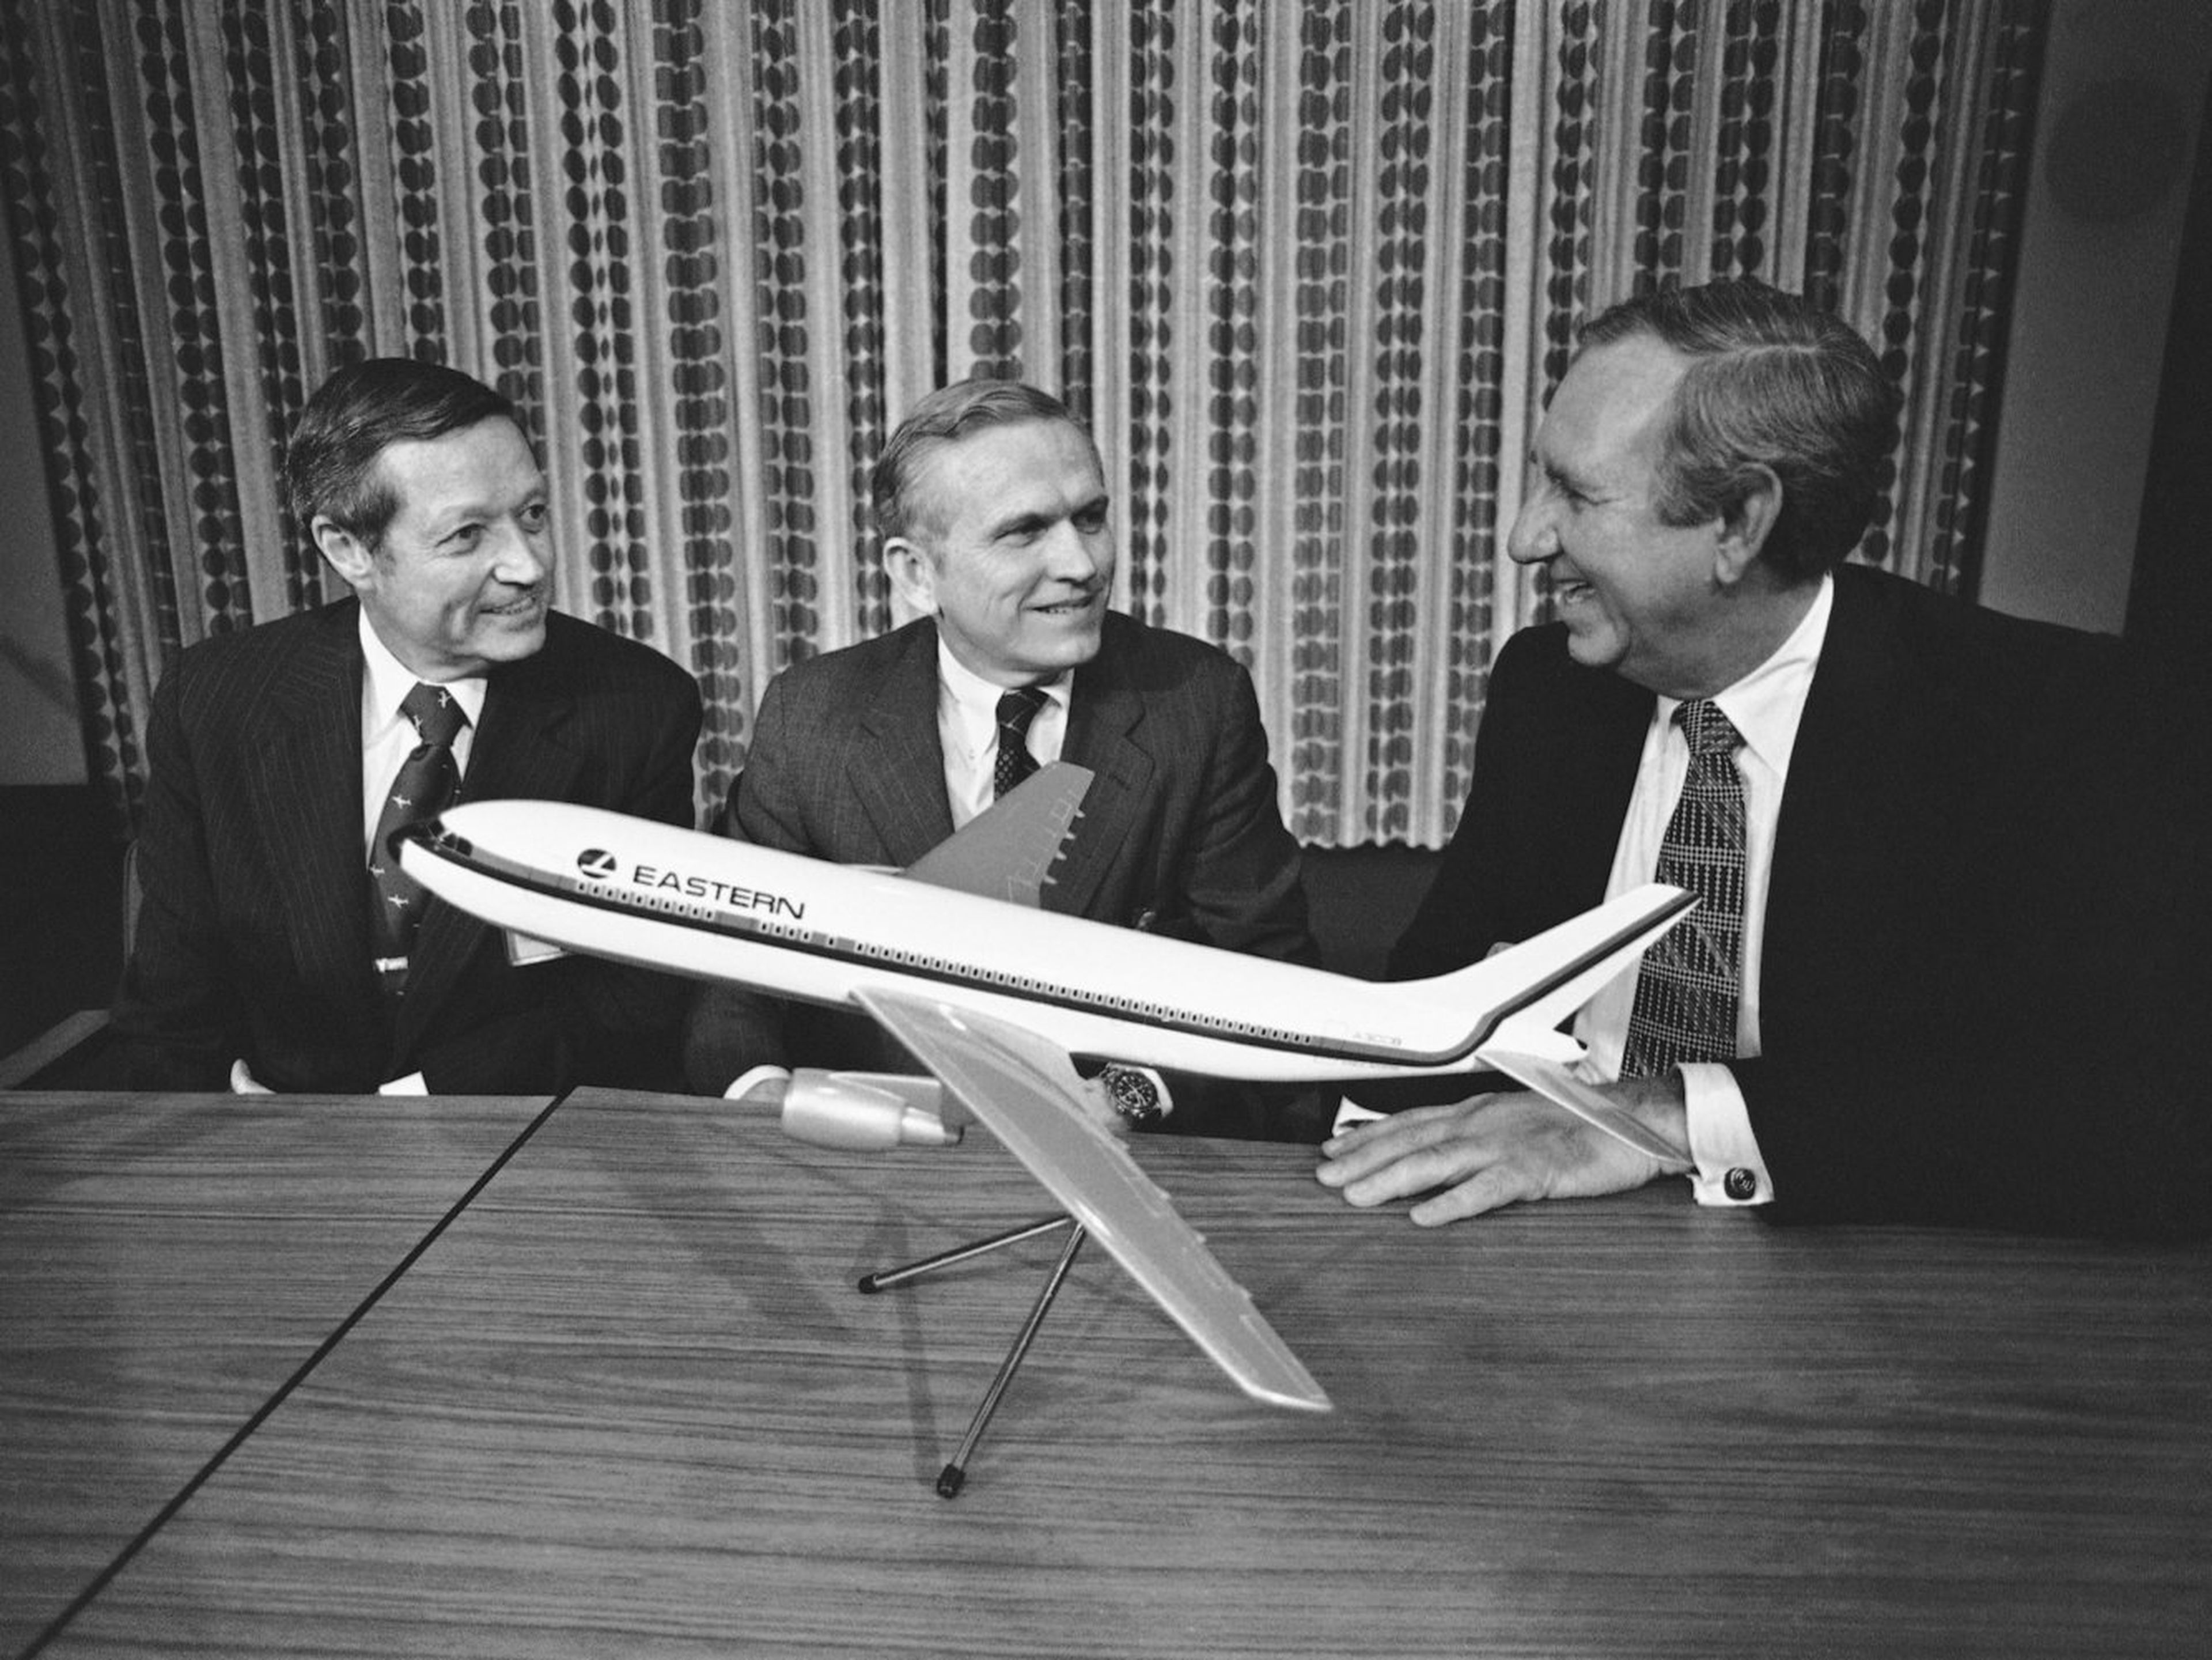 El exastronauta y CEO de las aerolínea Eastern Airlines Frank Borman, en el centro.